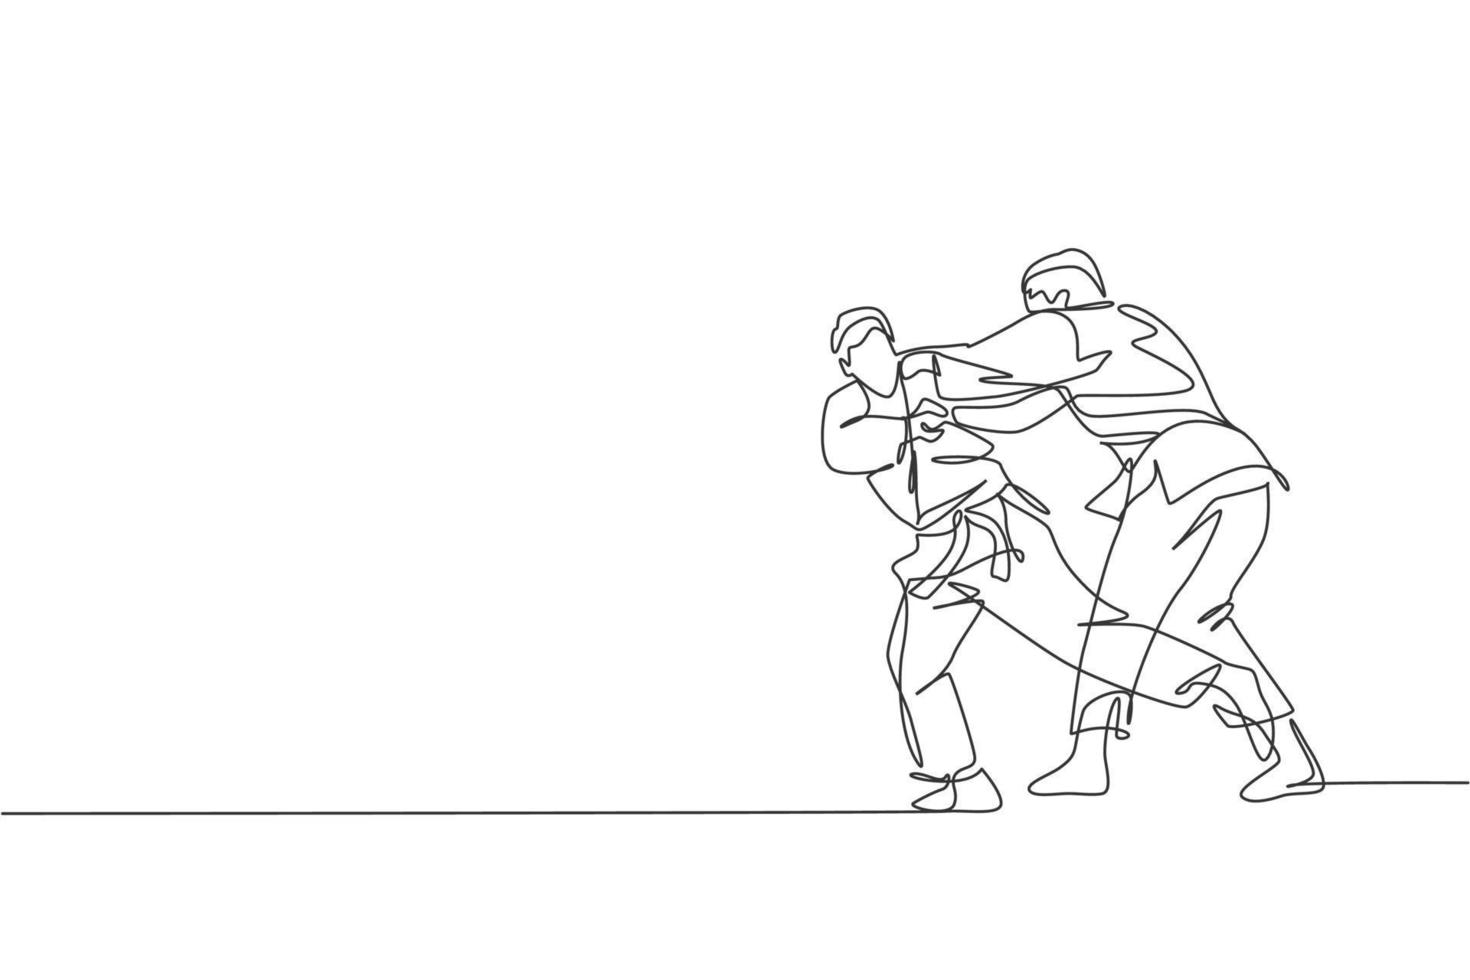 un dibujo de una sola línea de dos jóvenes luchadores judokas enérgicos luchan luchando en el centro de gimnasia ilustración gráfica vectorial. concepto de competición deportiva de artes marciales. diseño moderno de dibujo de línea continua vector